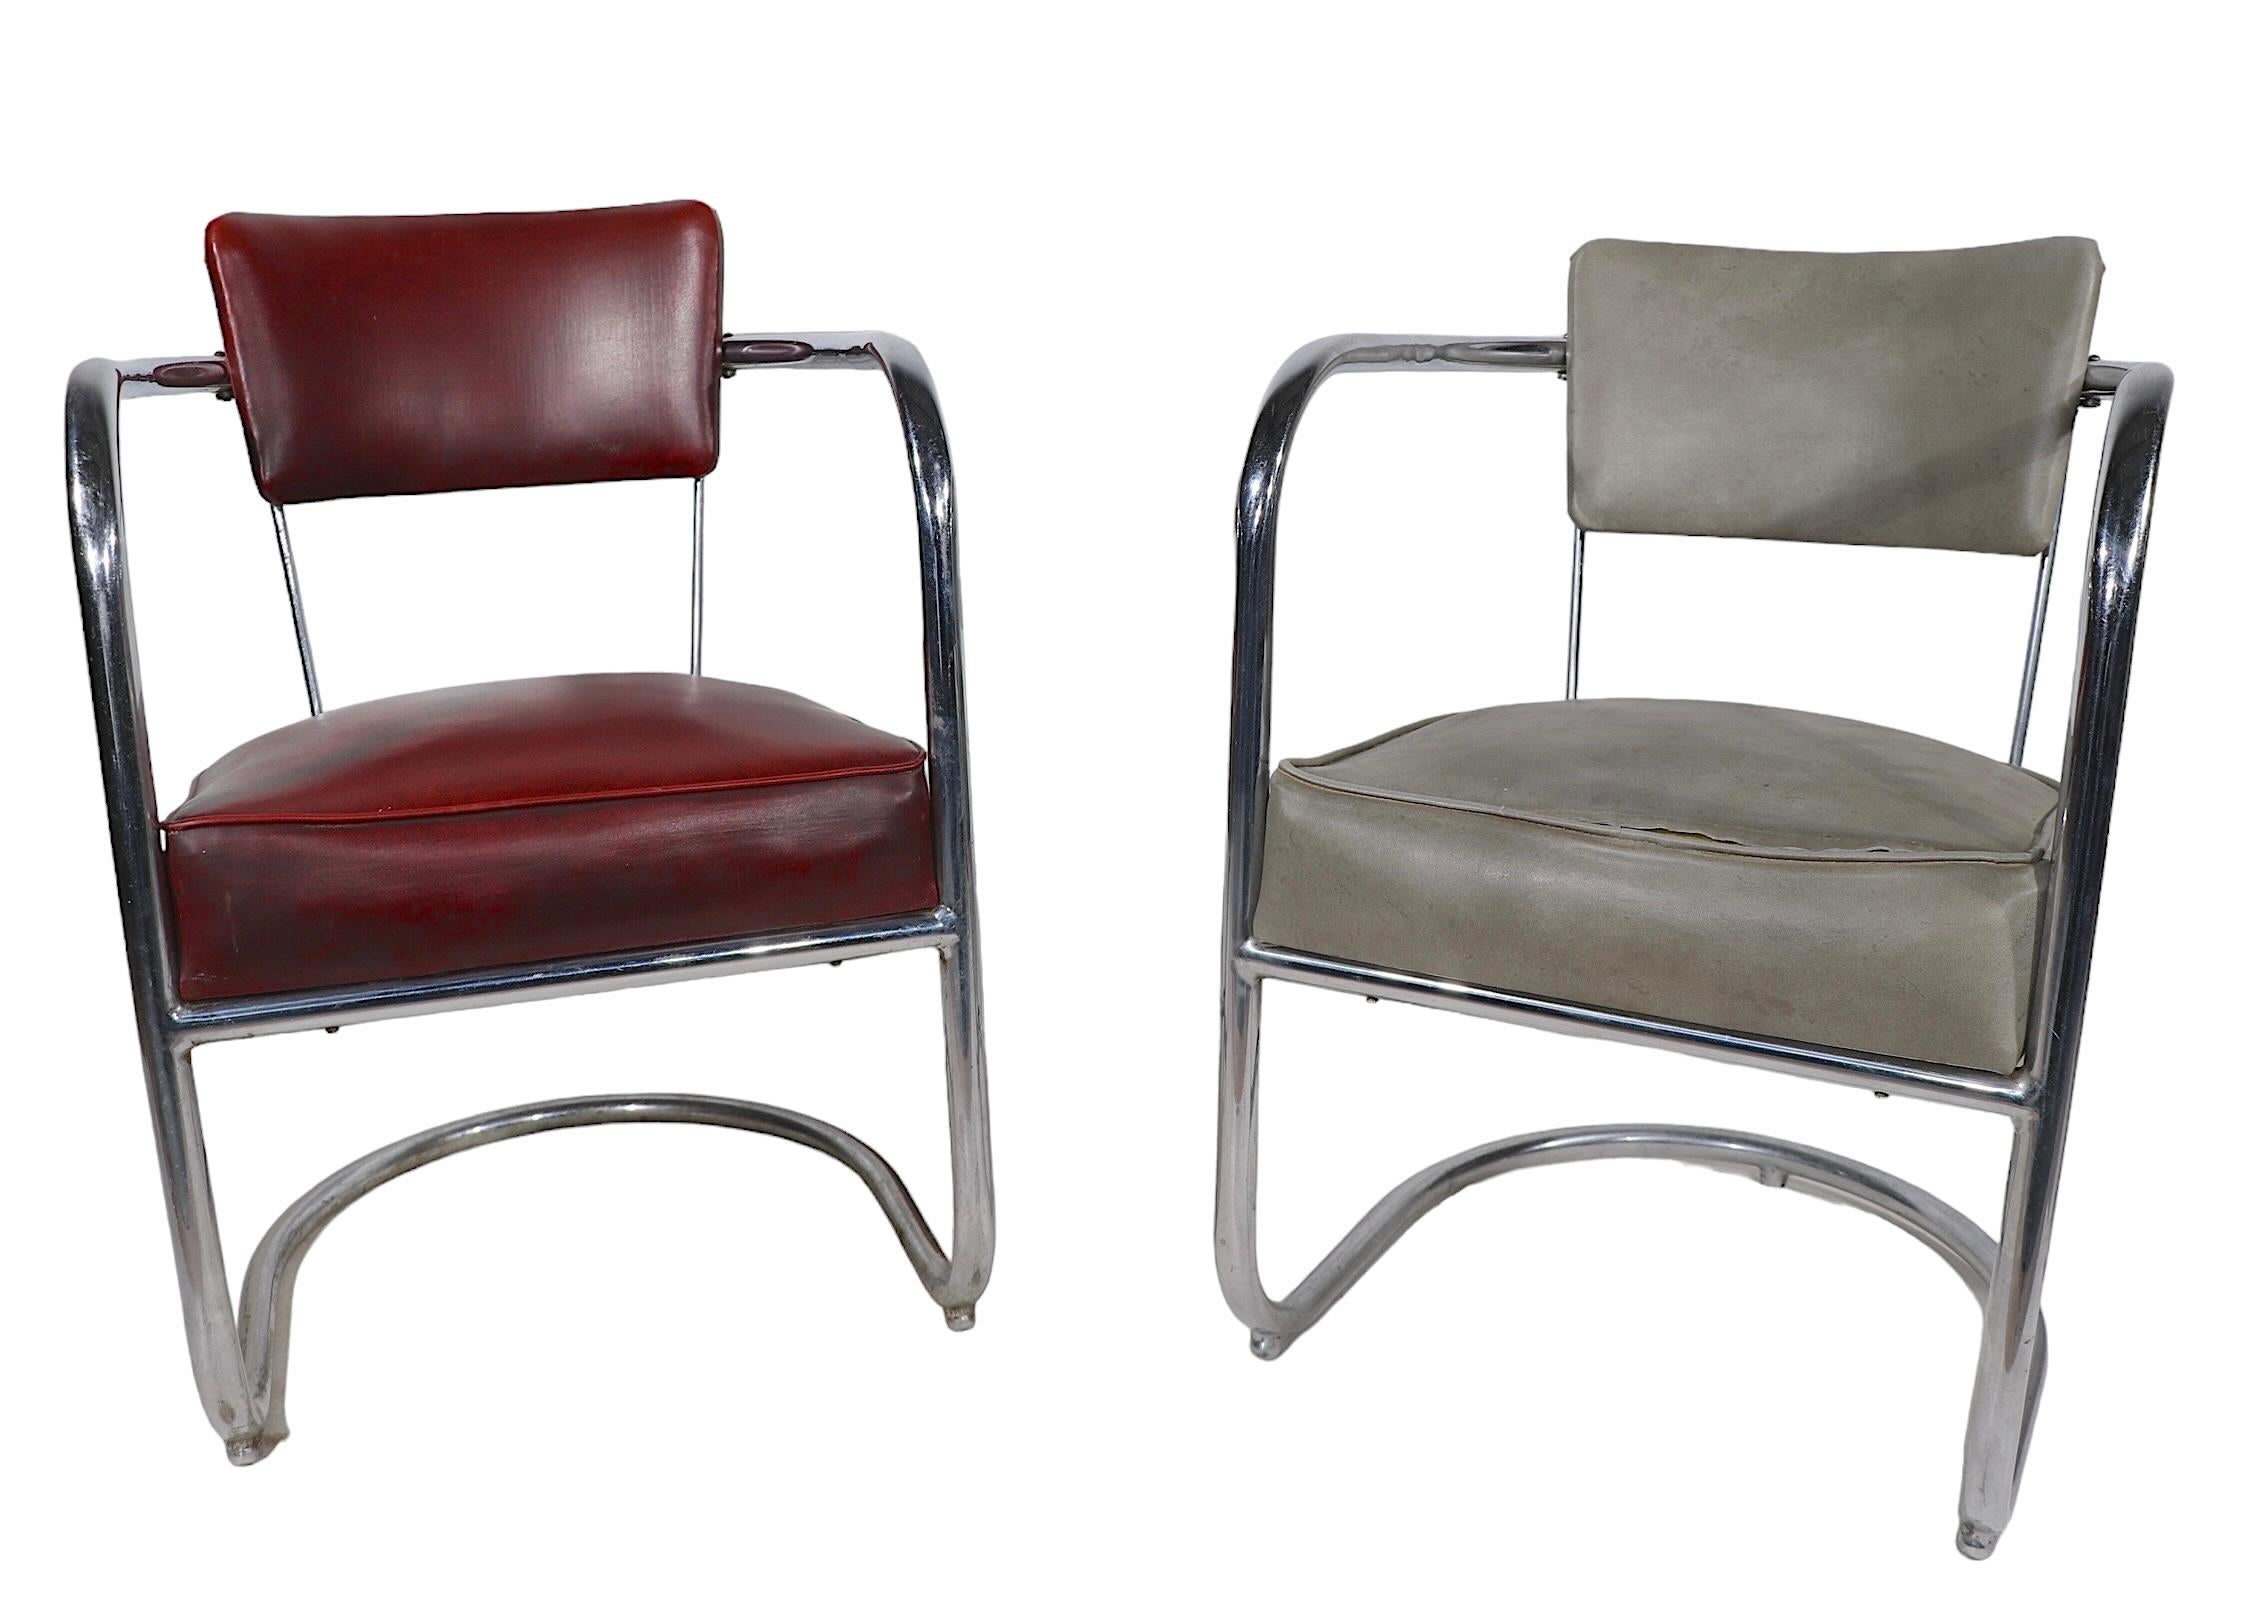 Verchromte Rohrstühle von Lloyd furniture, Design von Kim Weber, ca. 1930er Jahre. Die Stühle zeigen den klassischen frühindustriellen Stil des Maschinenzeitalters und des Art Déco mit einem durchgehenden Freischwinger.  Rohrrahmen,  mit Vinylsitzen